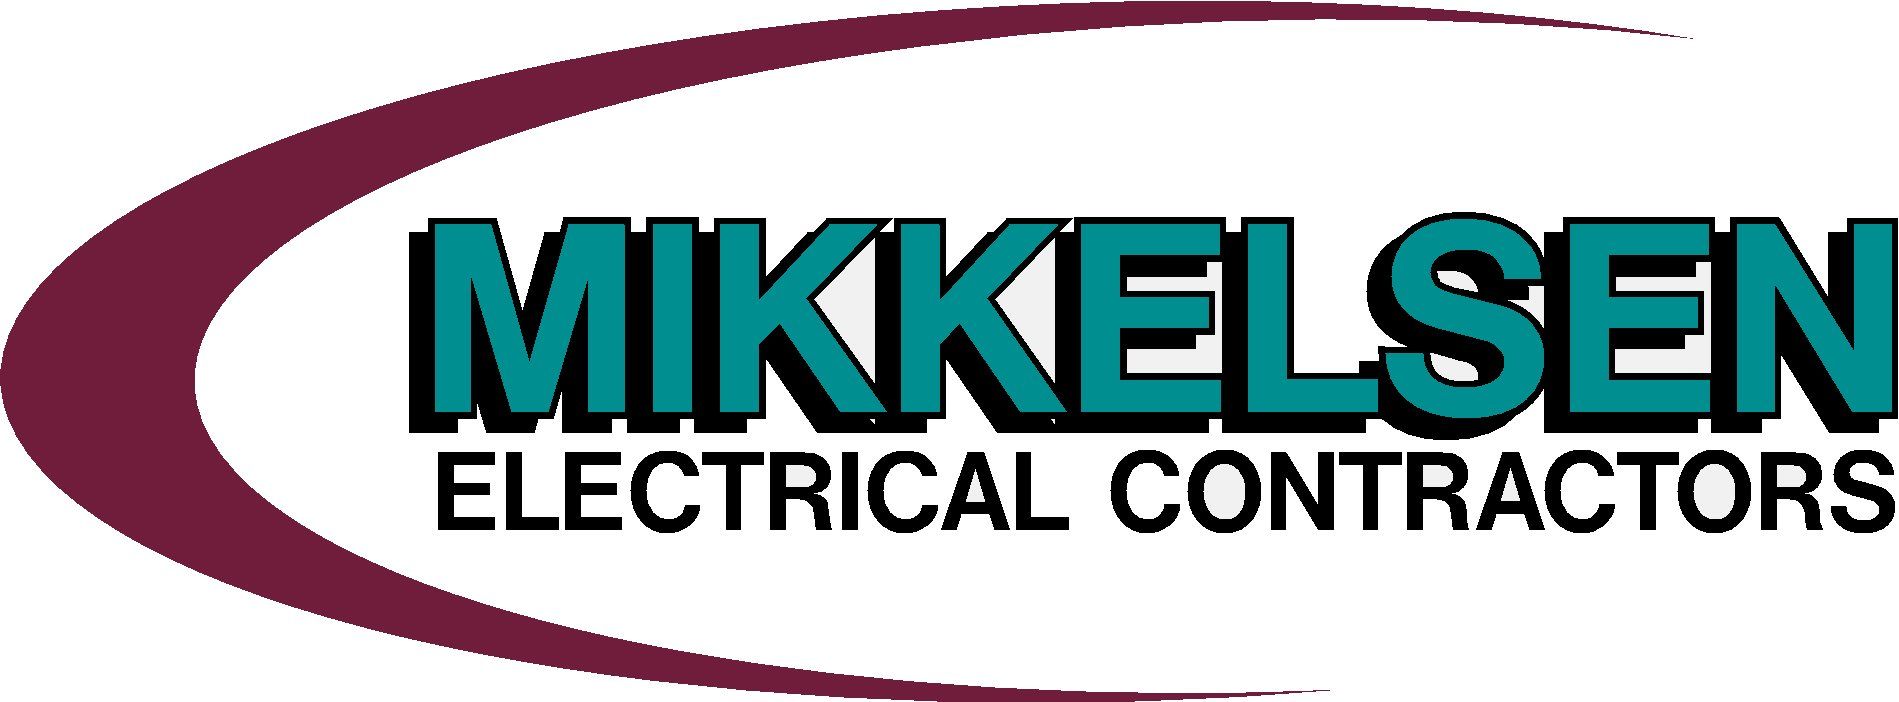 Mikkelsen Electrical Contractors